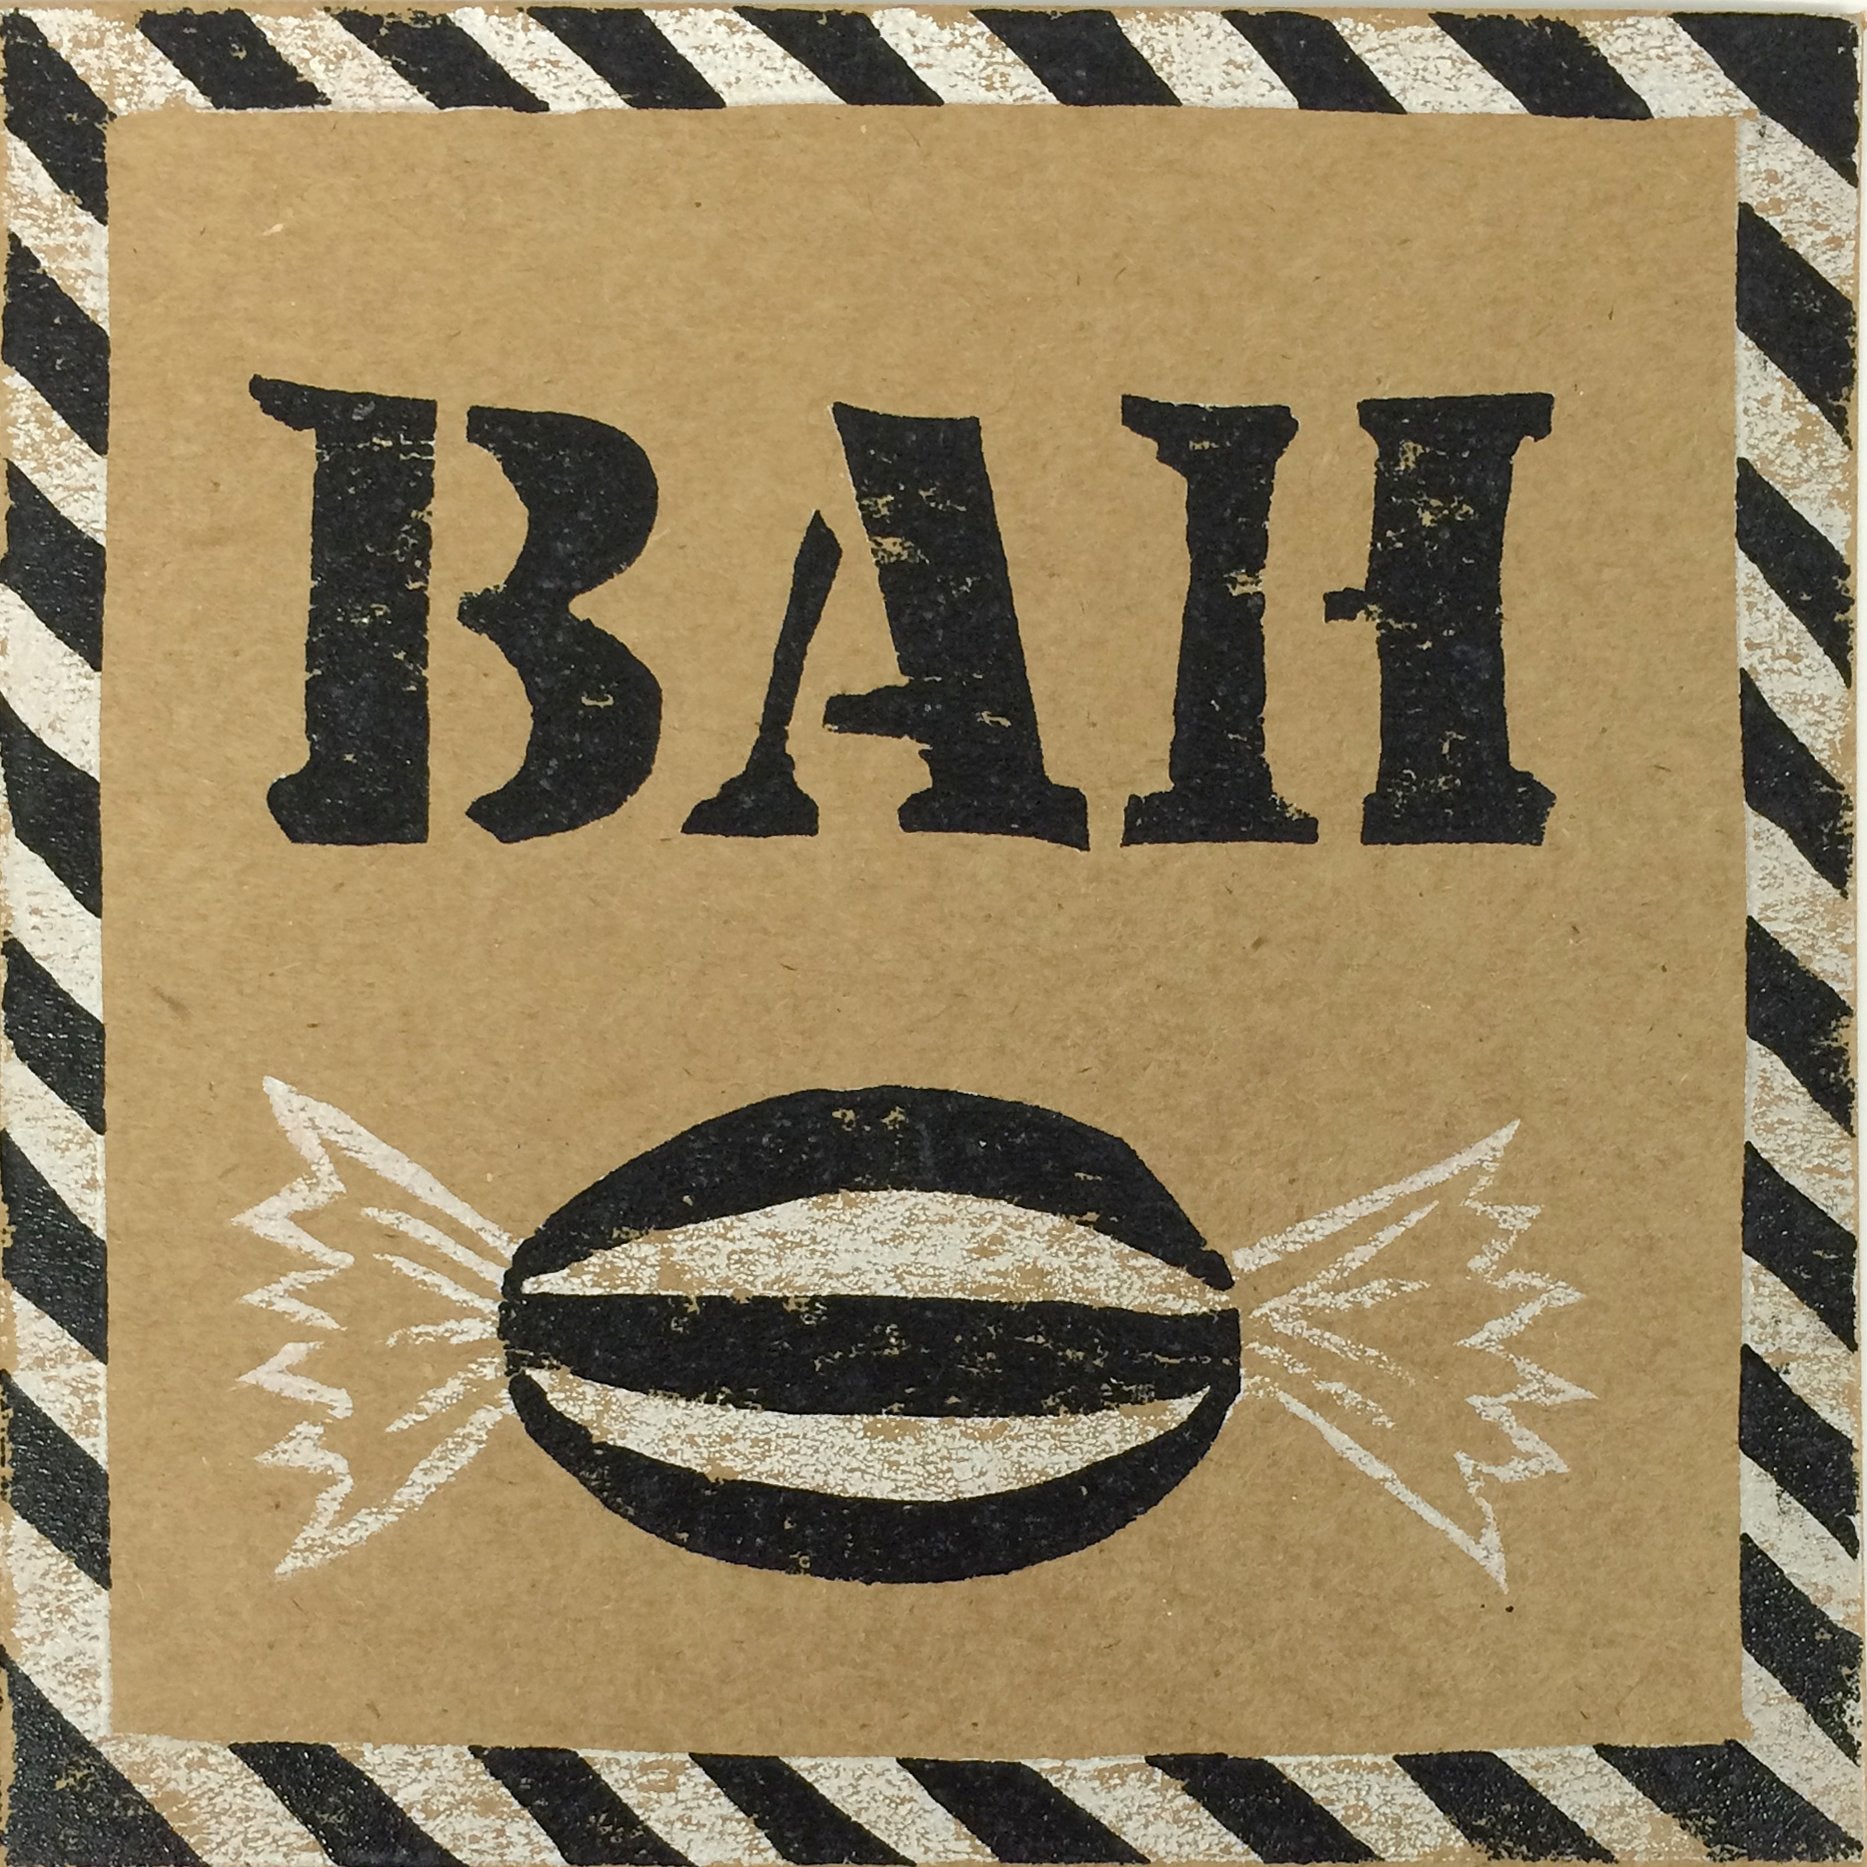 Easy ‘Bah Humbug’ Reduction Linocut Christmas Card﻿